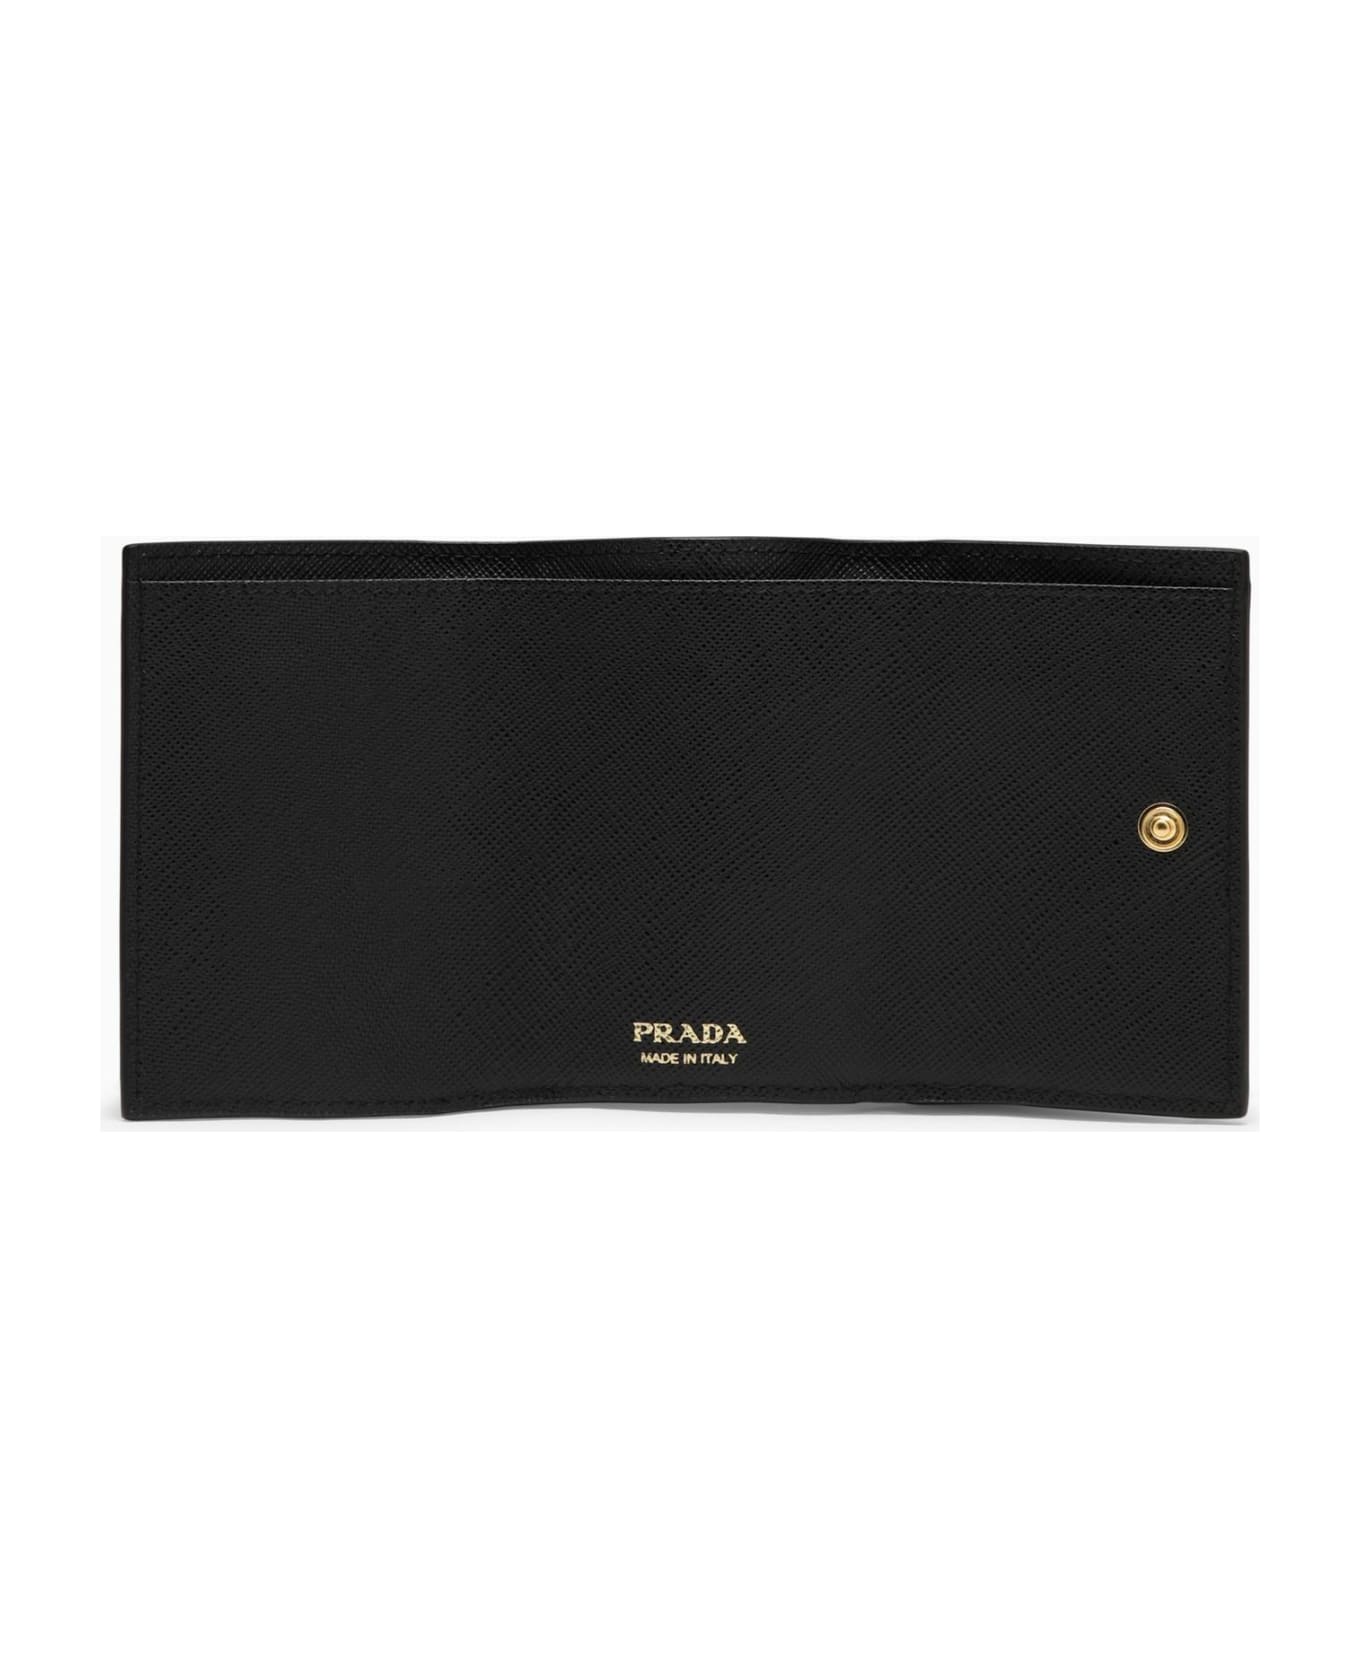 Prada Black Saffiano Leather Small Wallet - Nero 財布